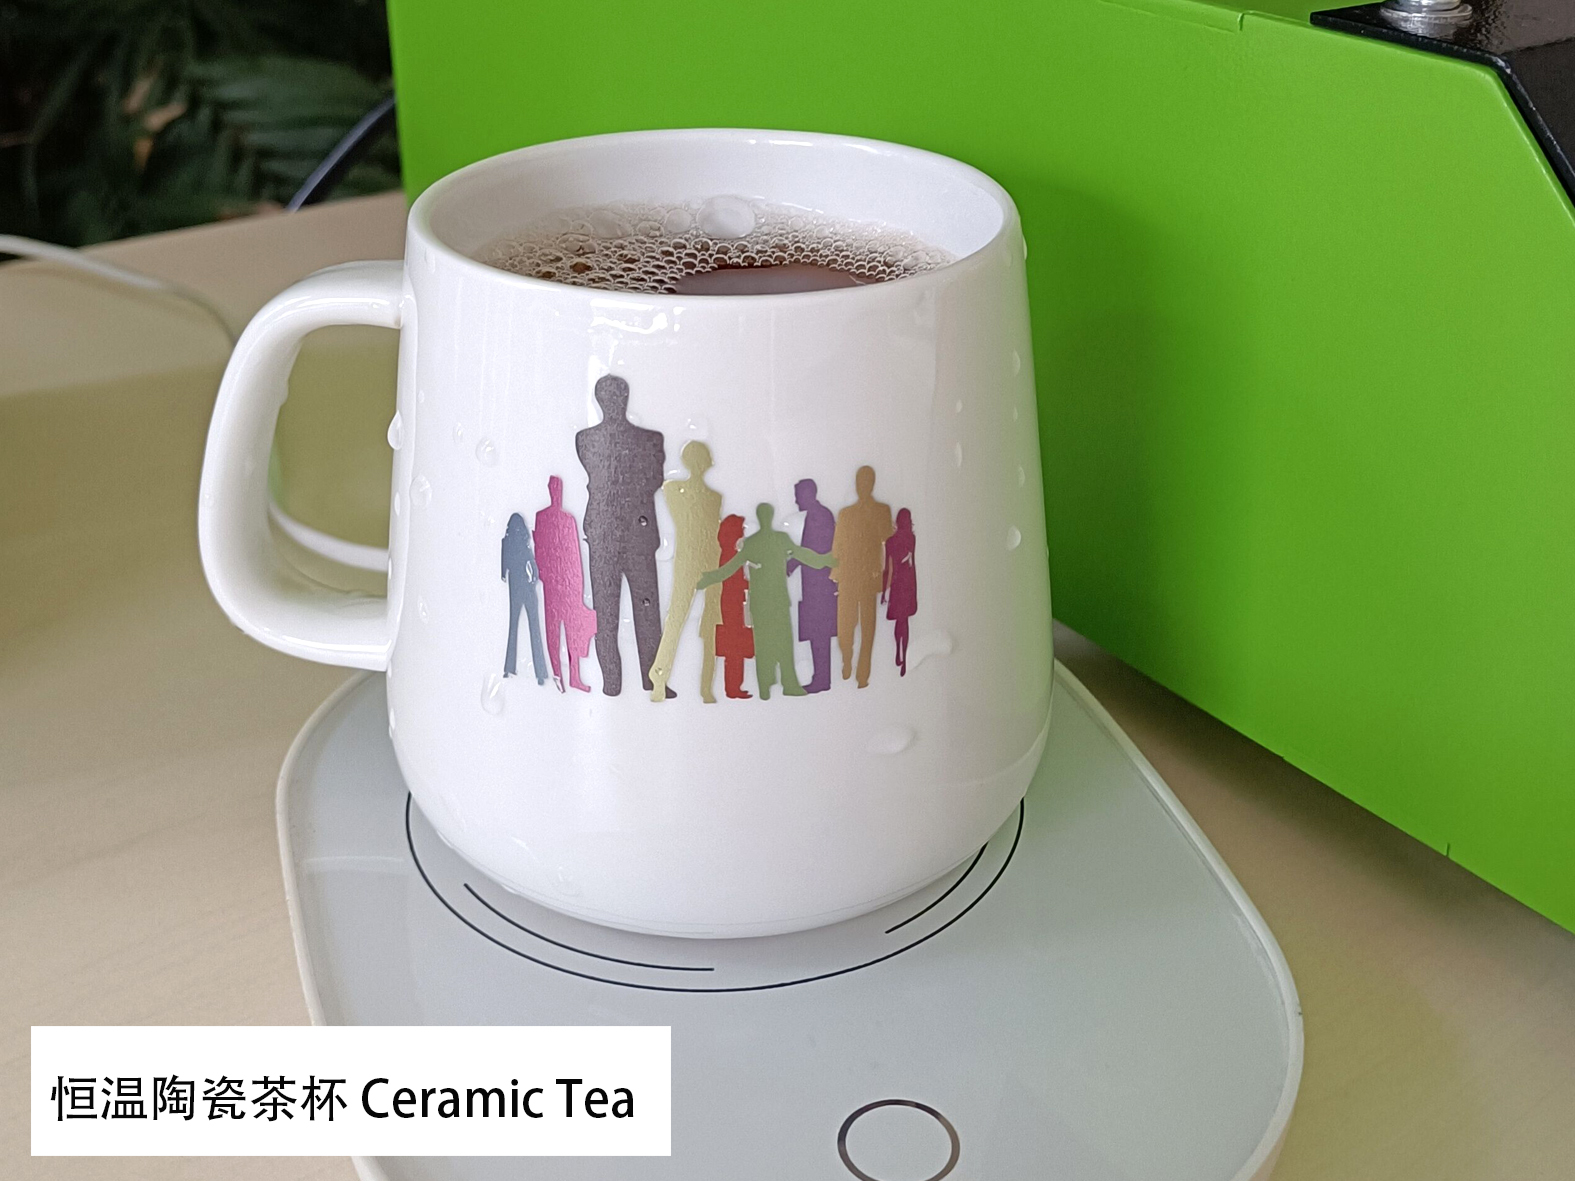 Шолја со термостат со подлога за греење 杯垫恒温陶瓷茶杯 Керамички чај